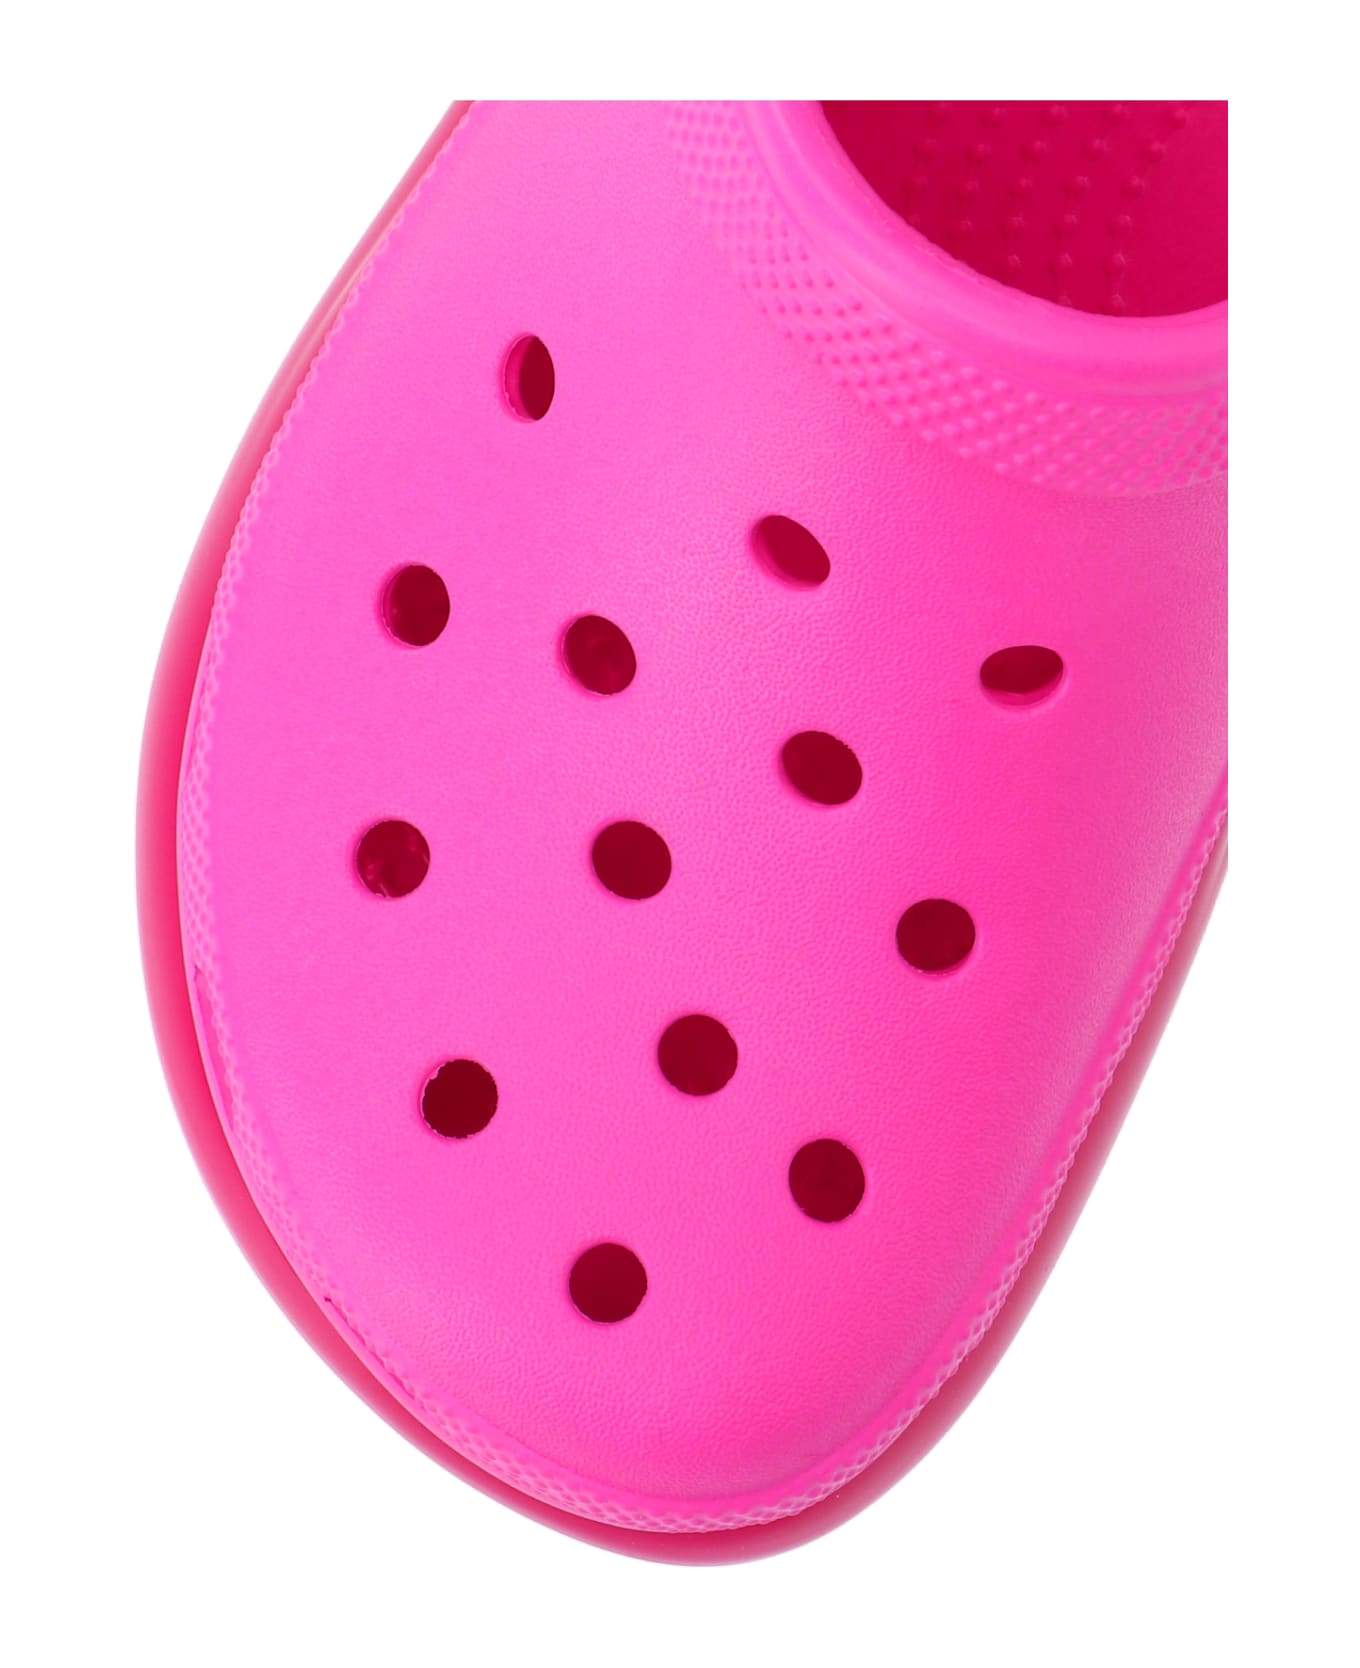 Crocs 'mega Crush' Mules - Pink